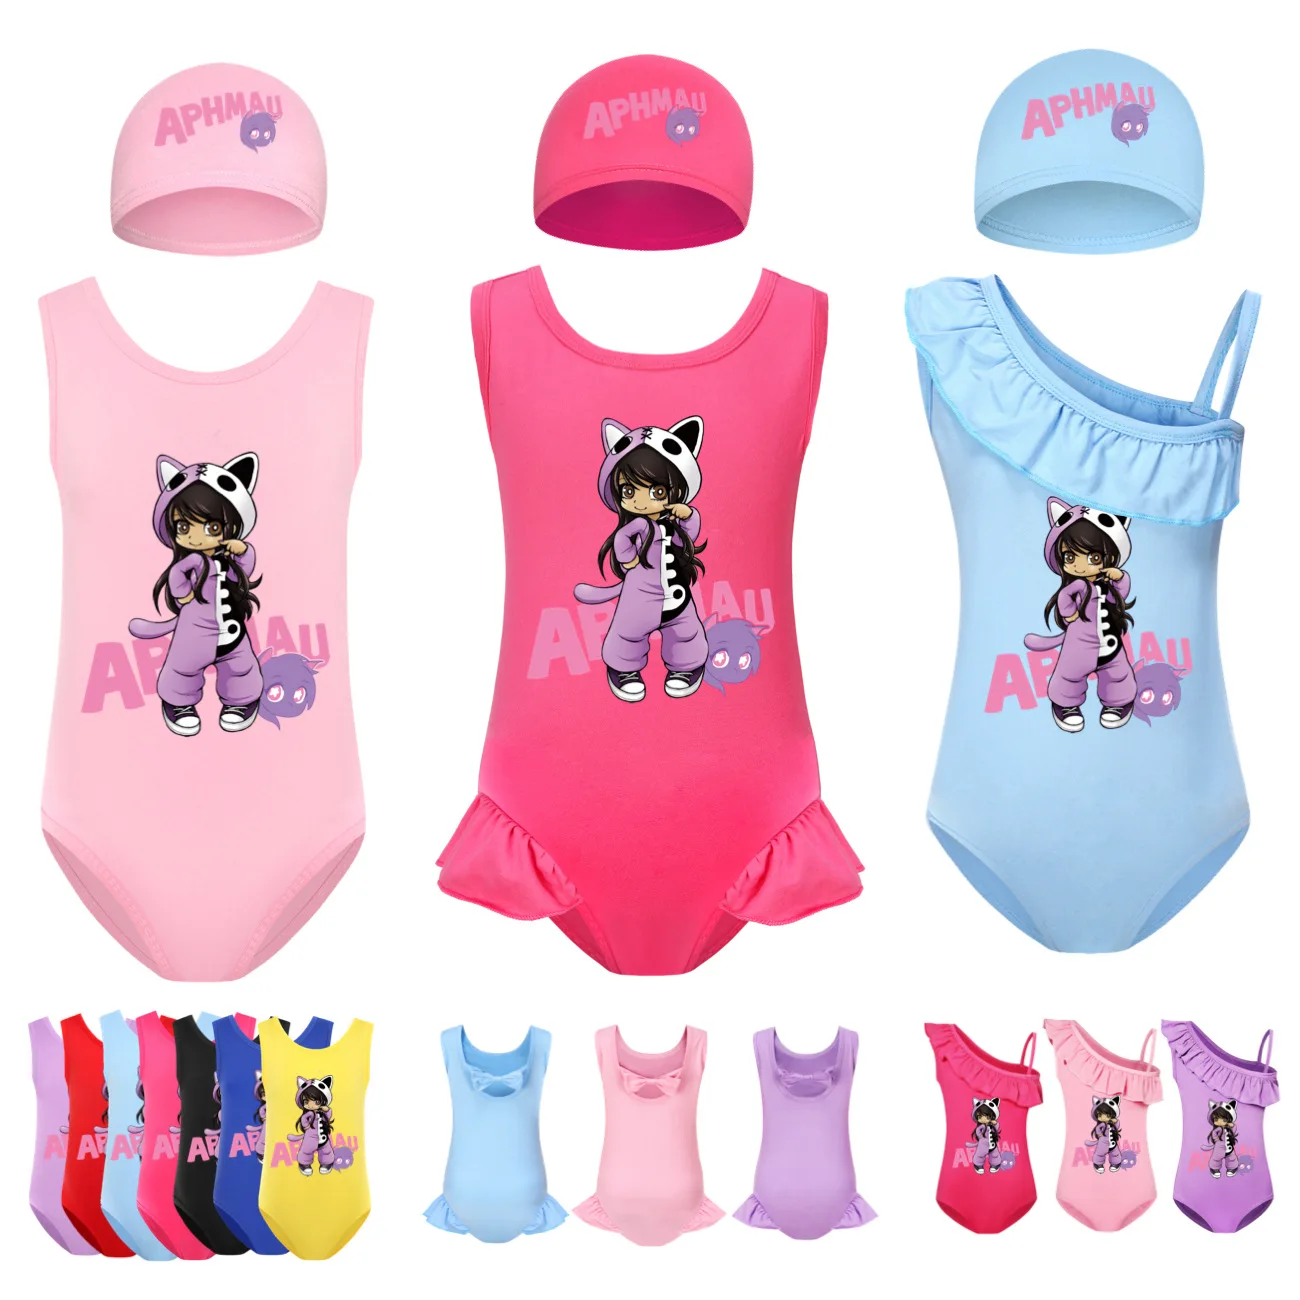 

Детский слитный купальник с котом APHMAU, одежда для плавания, детские купальники Аарон для девочек, детские купальные костюмы, полноразмерные купальники для девочек с шапочкой